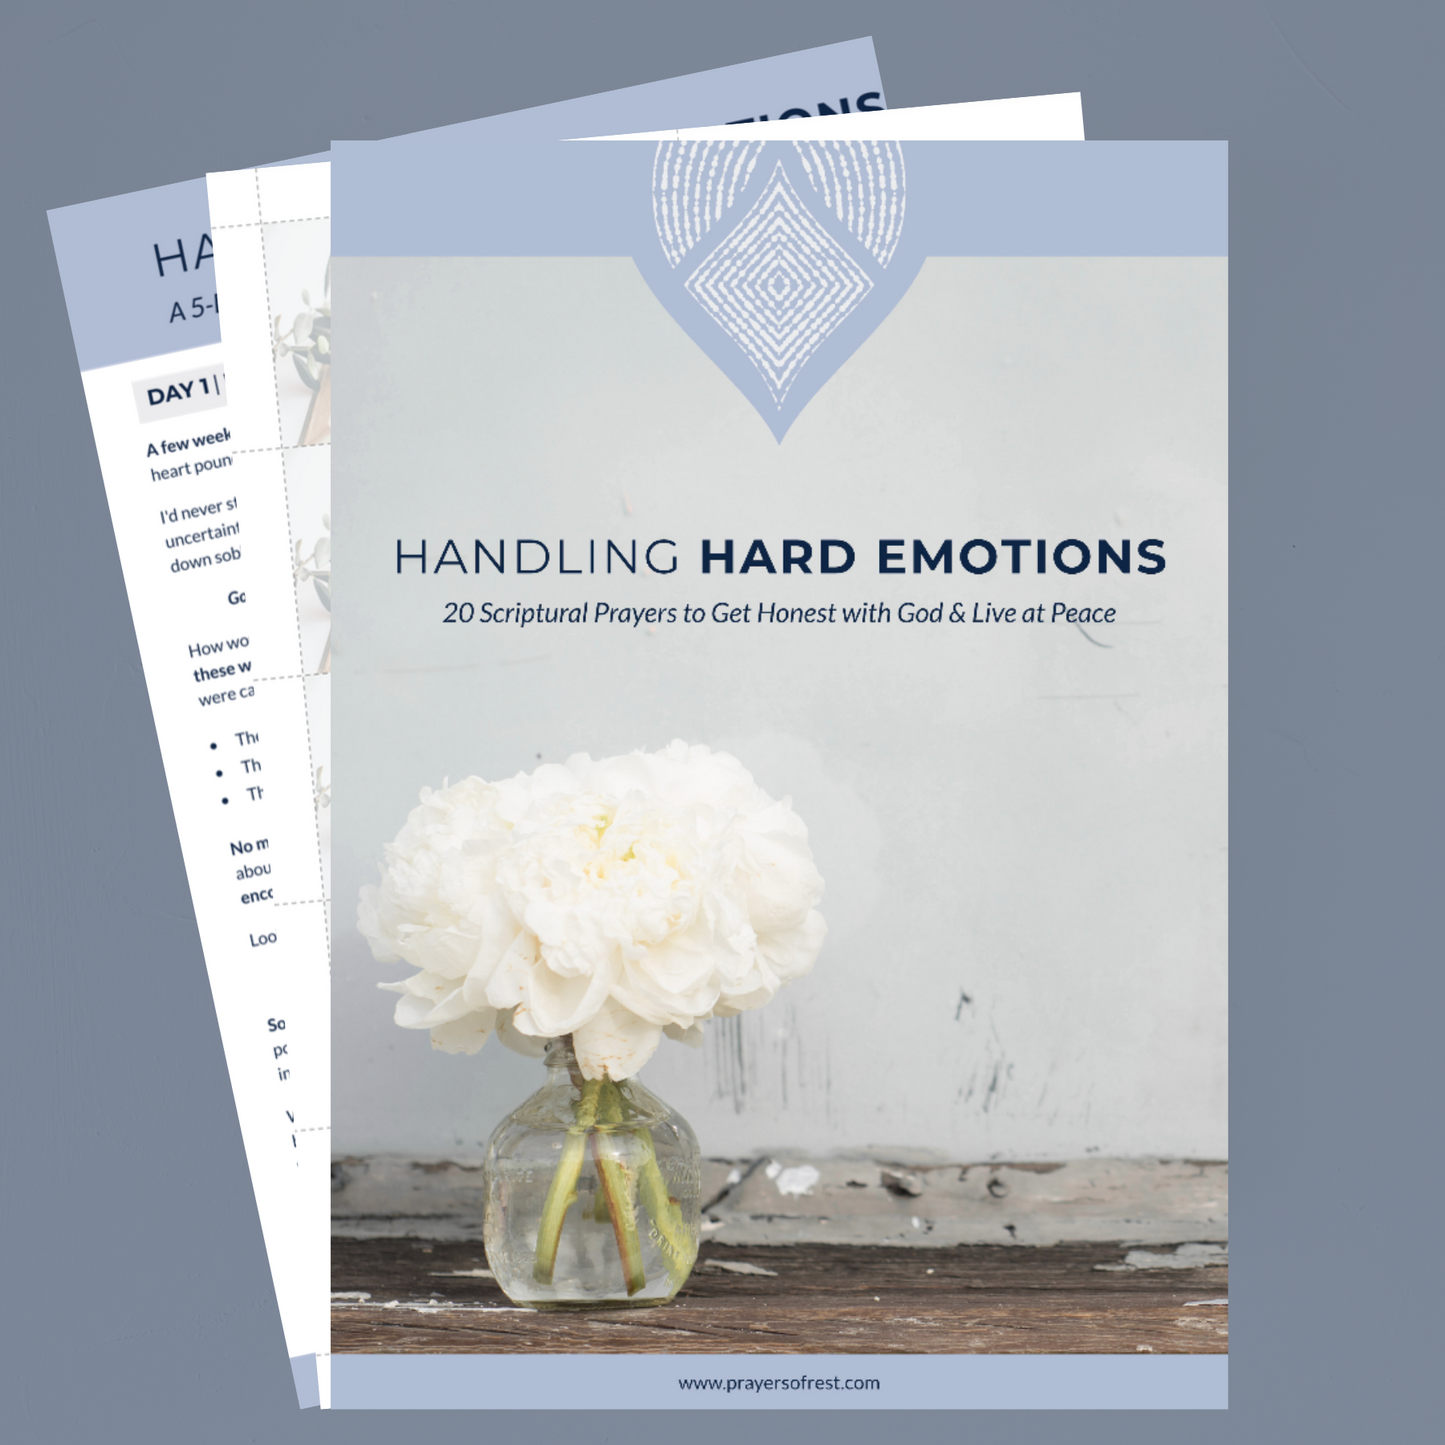 Handling Hard Emotions Scripture Cards - DIGITAL DOWNLOAD ONLY